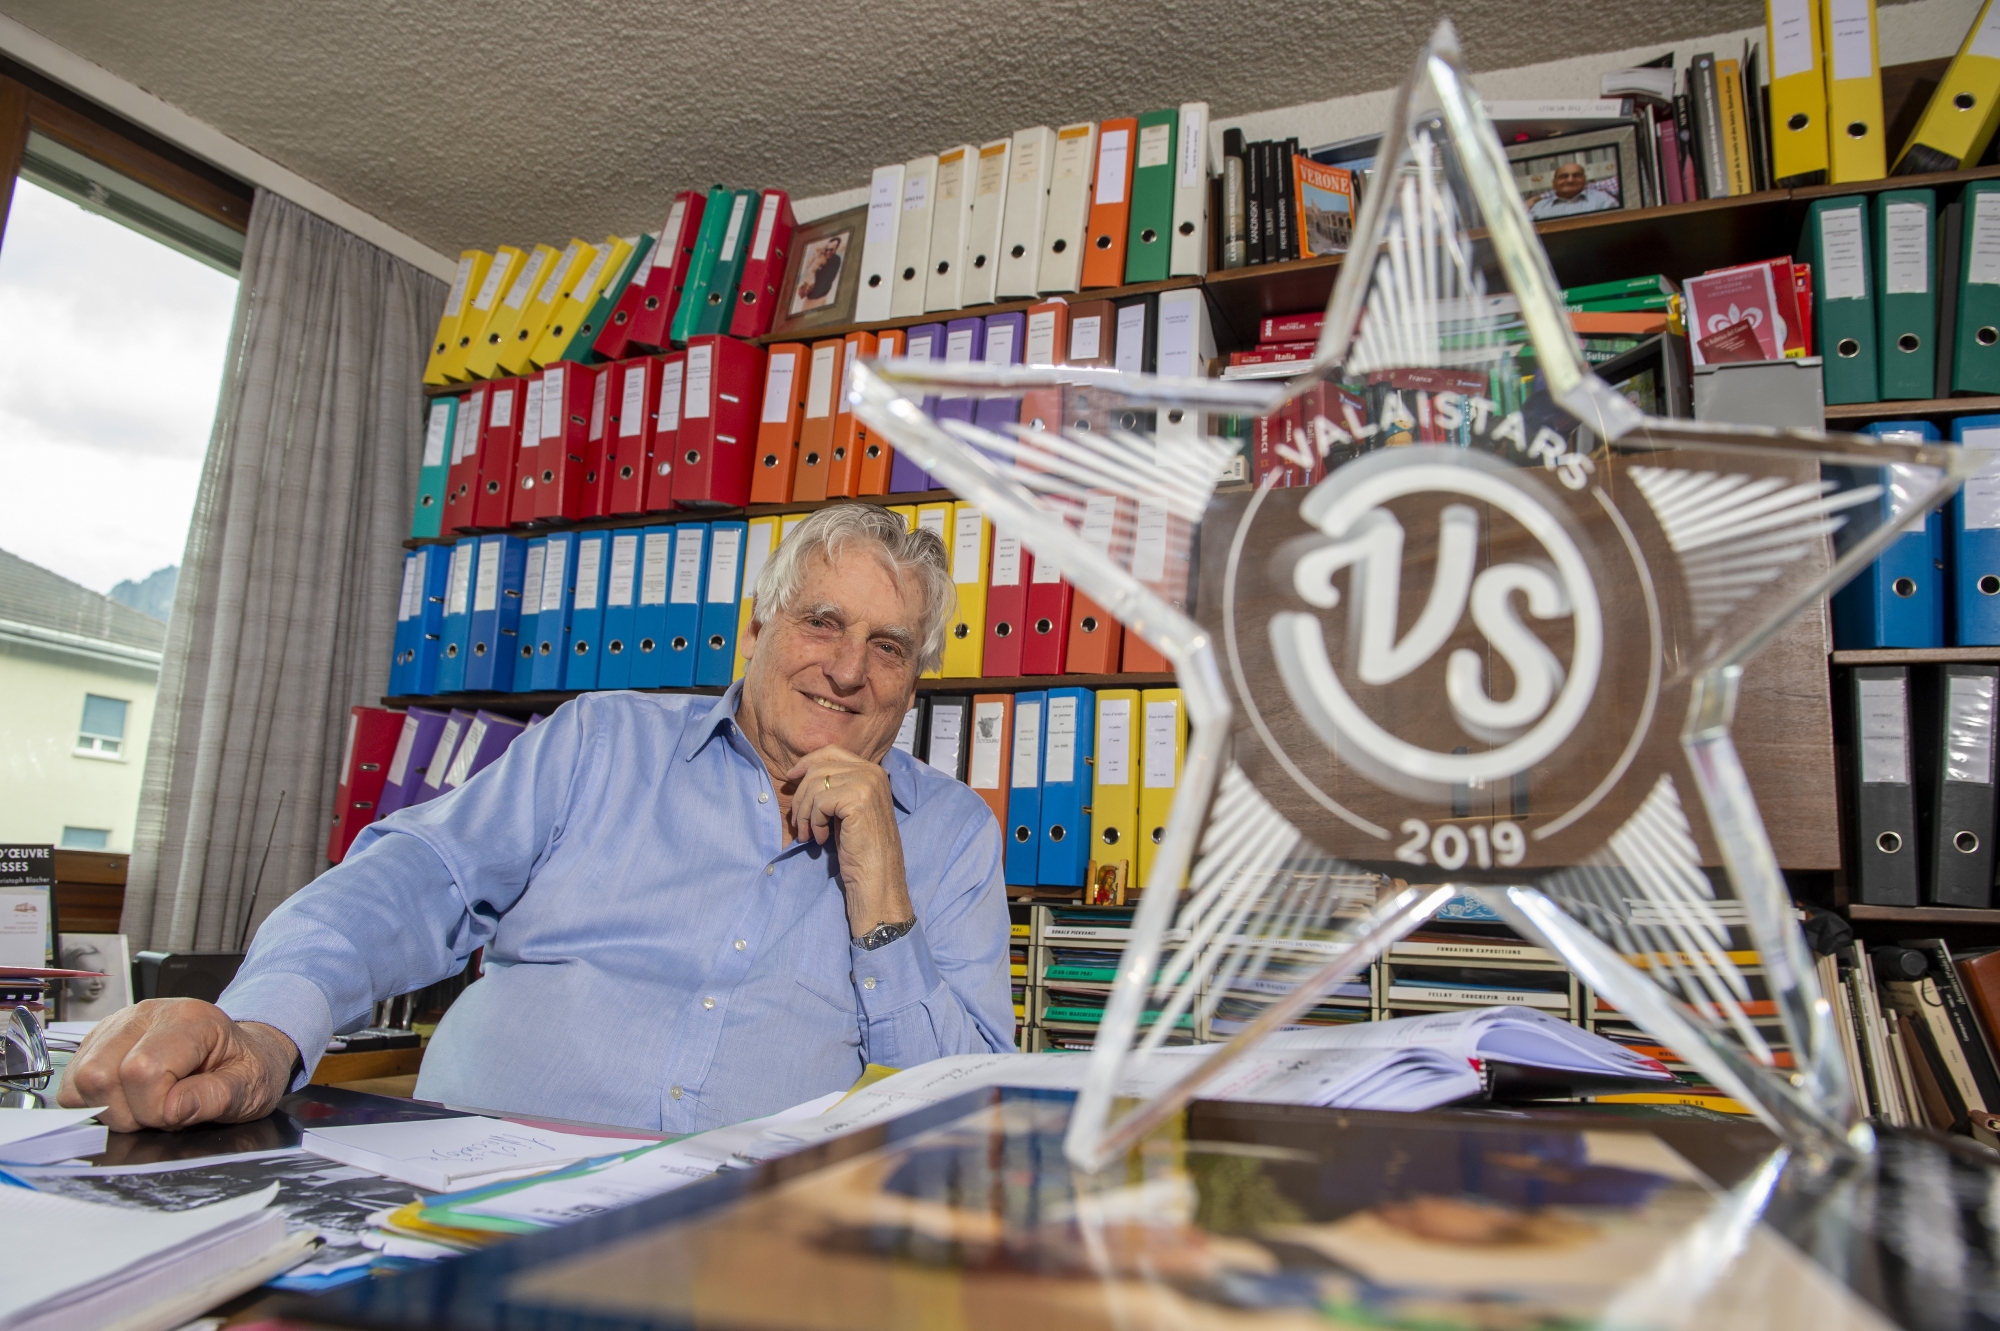 Léonard Gianadda photographié dans son bureau d'ingénieur à Martigny, avec son prix de ValaiStar 2019, distinction de plus dans son palmarès unique en son genre.